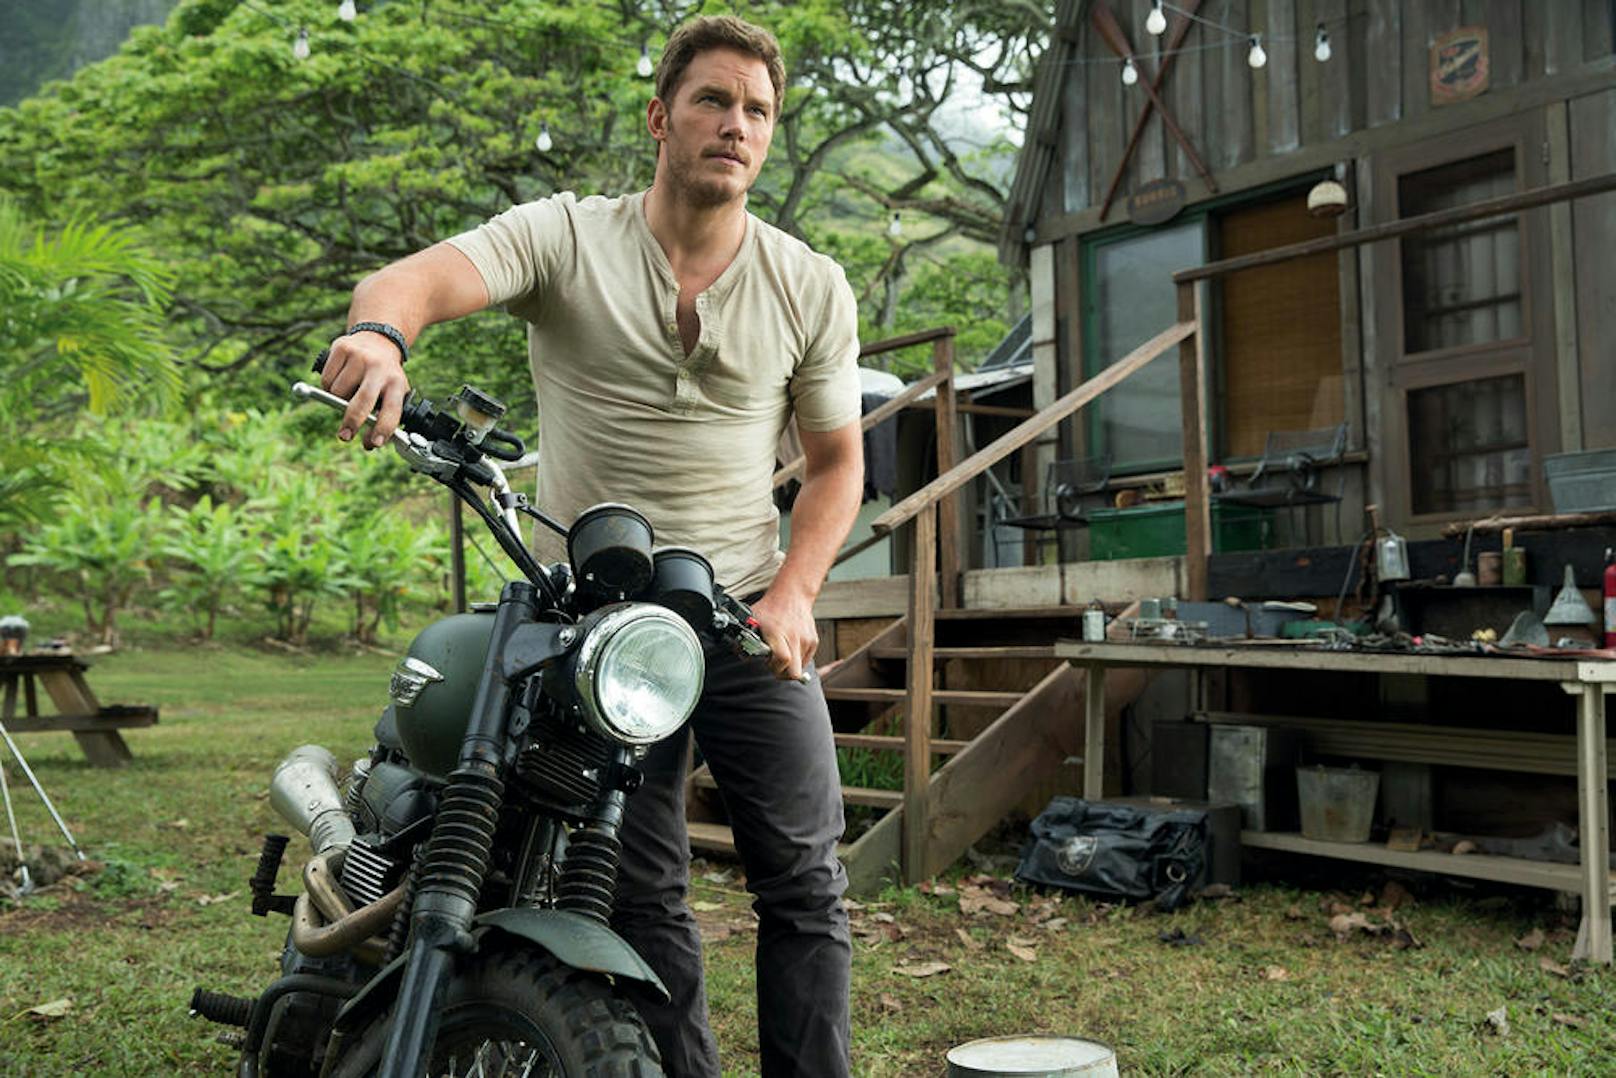 Chris Pratt in "Jurassic World"